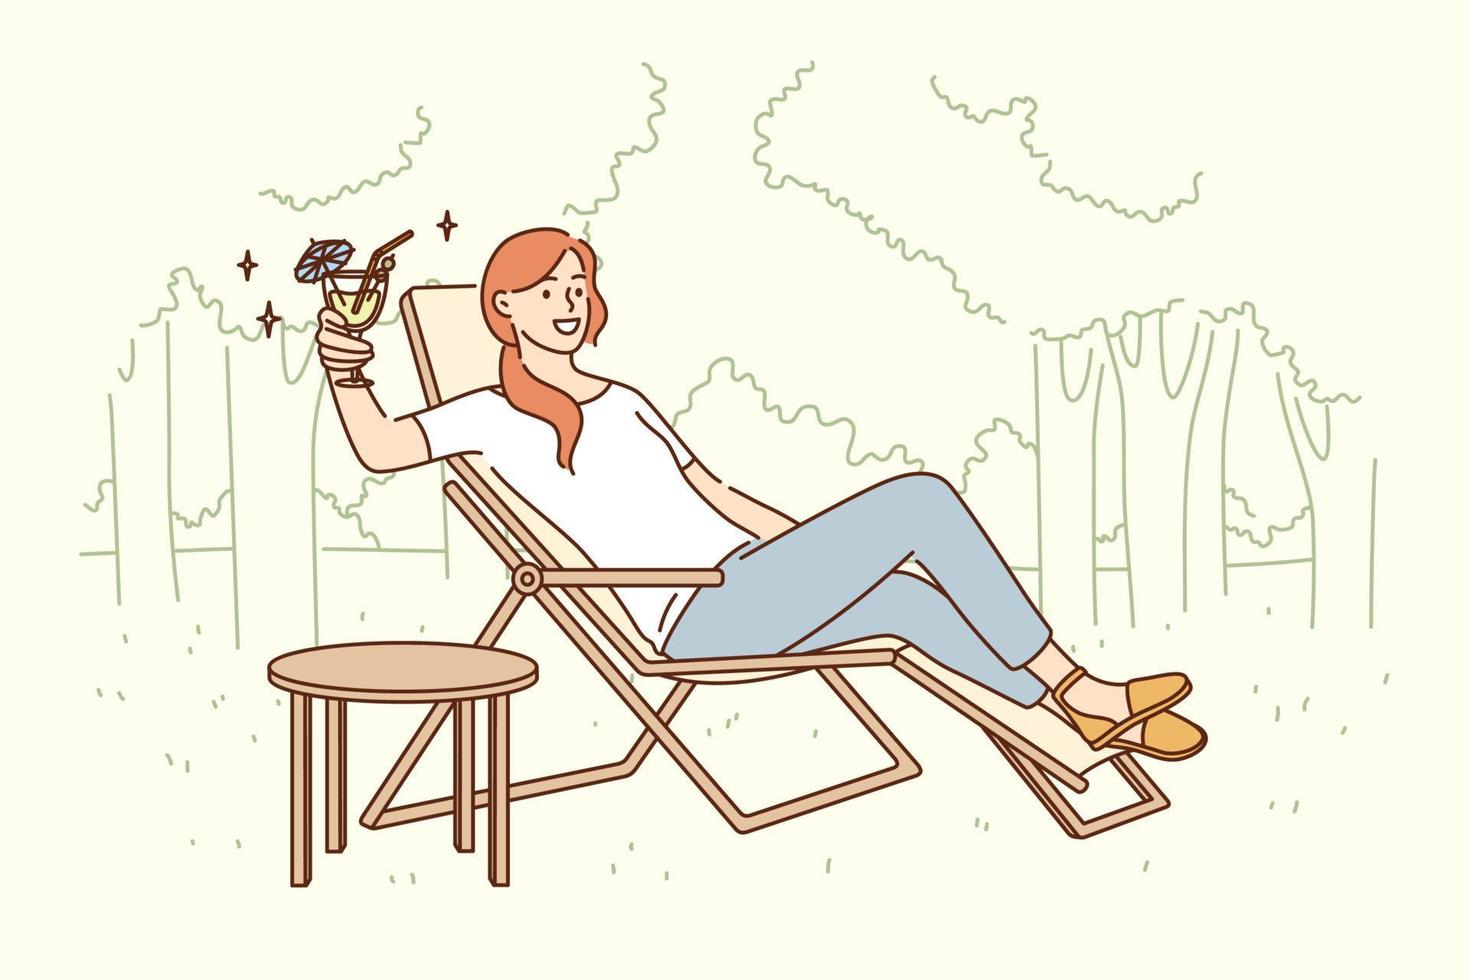 concepto de actividad de relajación y ocio. sonriente personaje de dibujos animados de una mujer bonita sentada en una tumbona bebiendo un cóctel de lujo relajándose solo al aire libre ilustración vectorial vector